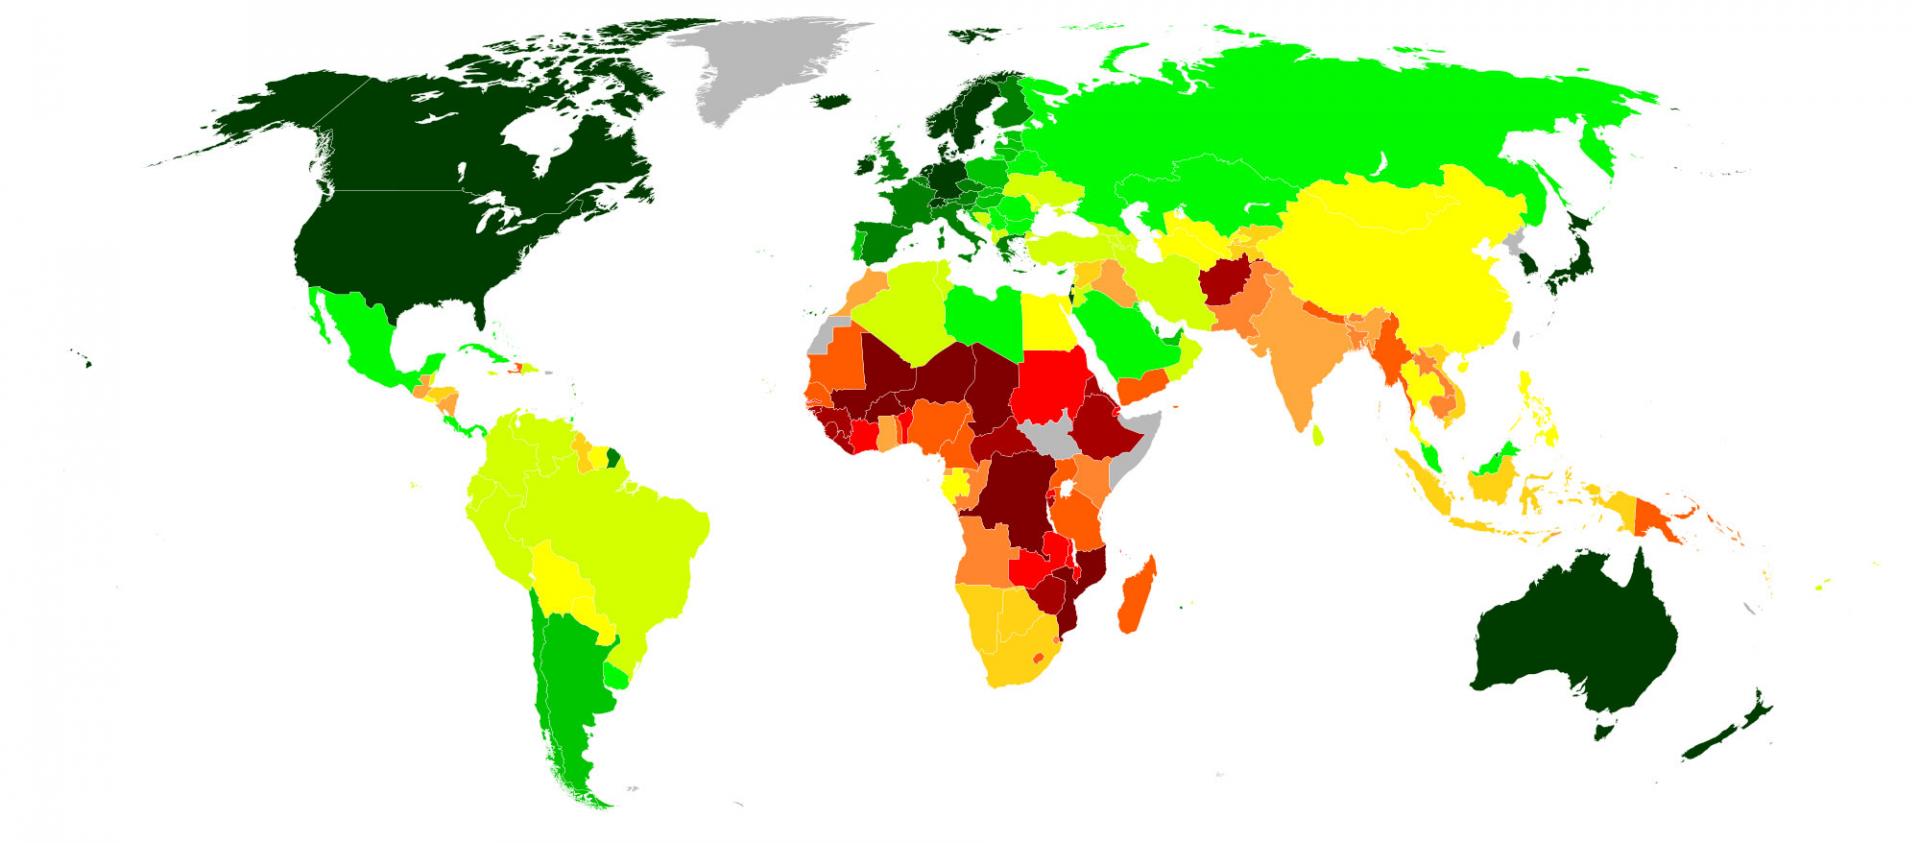 Самые богатые страны мира на карте